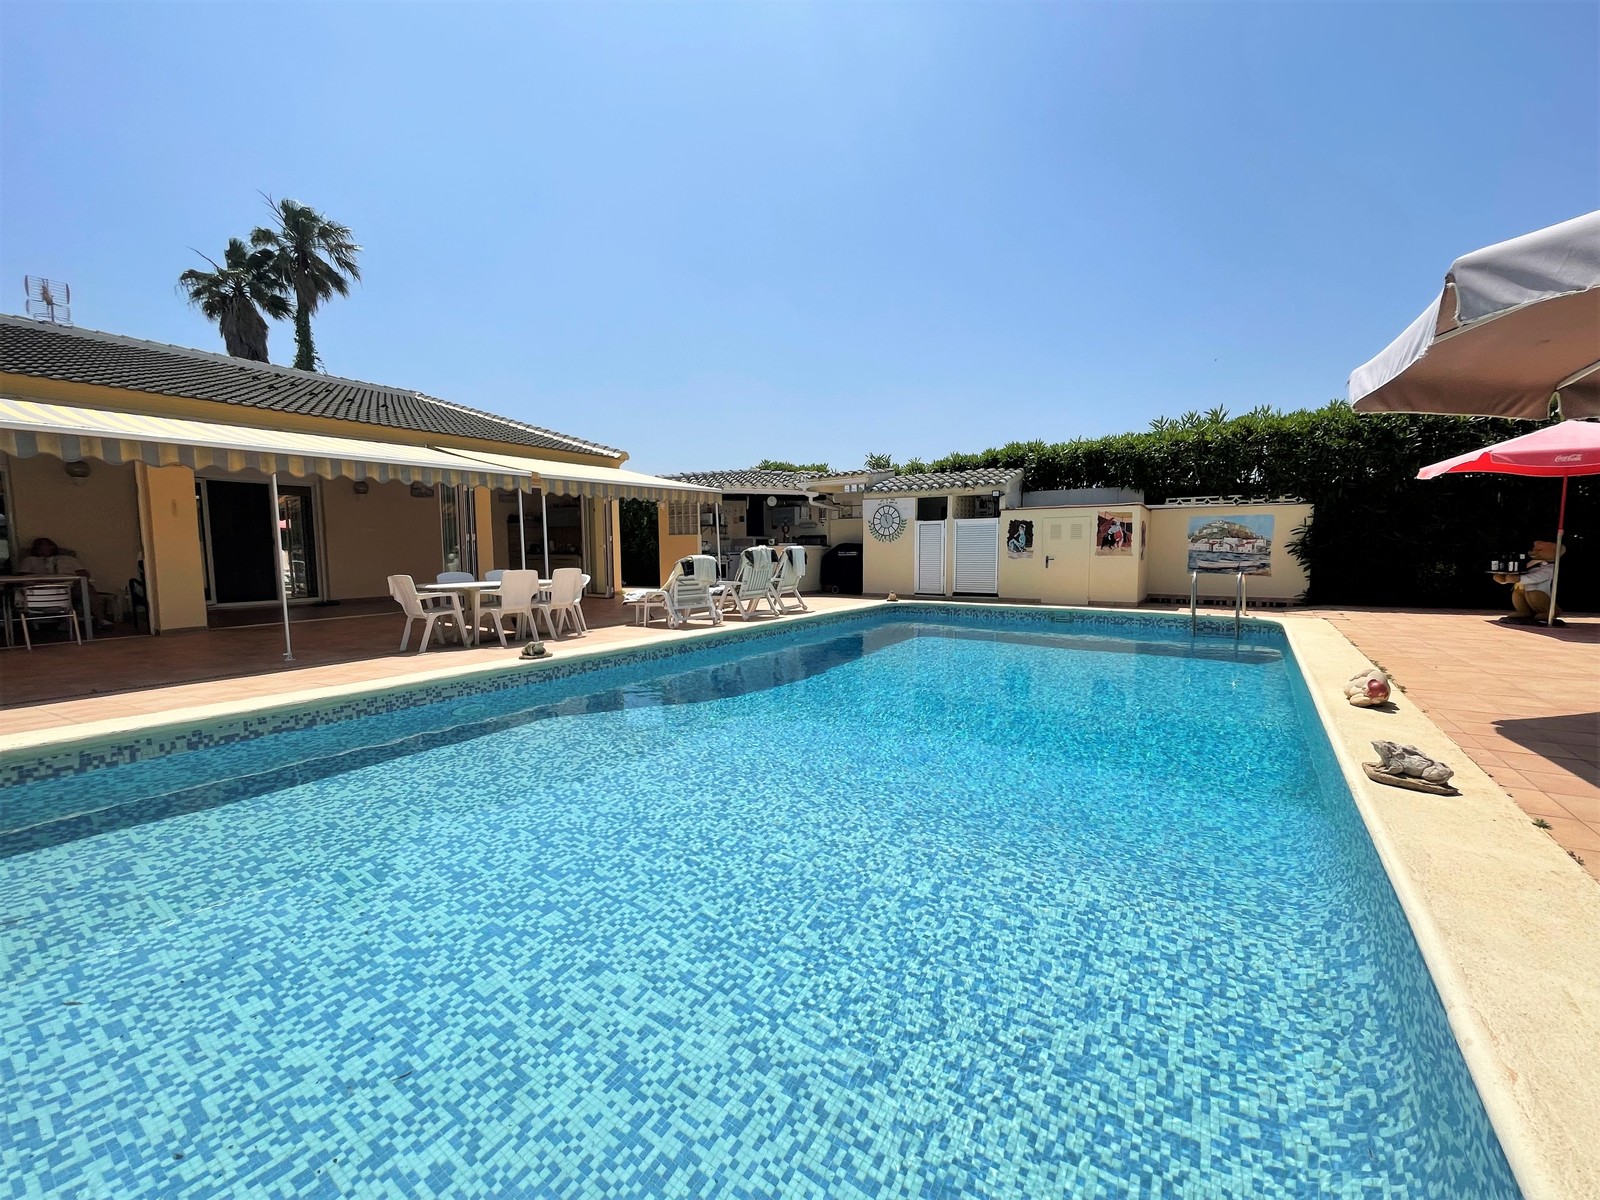 Belle villa de plain-pied avec piscine, garage, chauffage et 2 unités d'habitation ! Grand terrain ! 